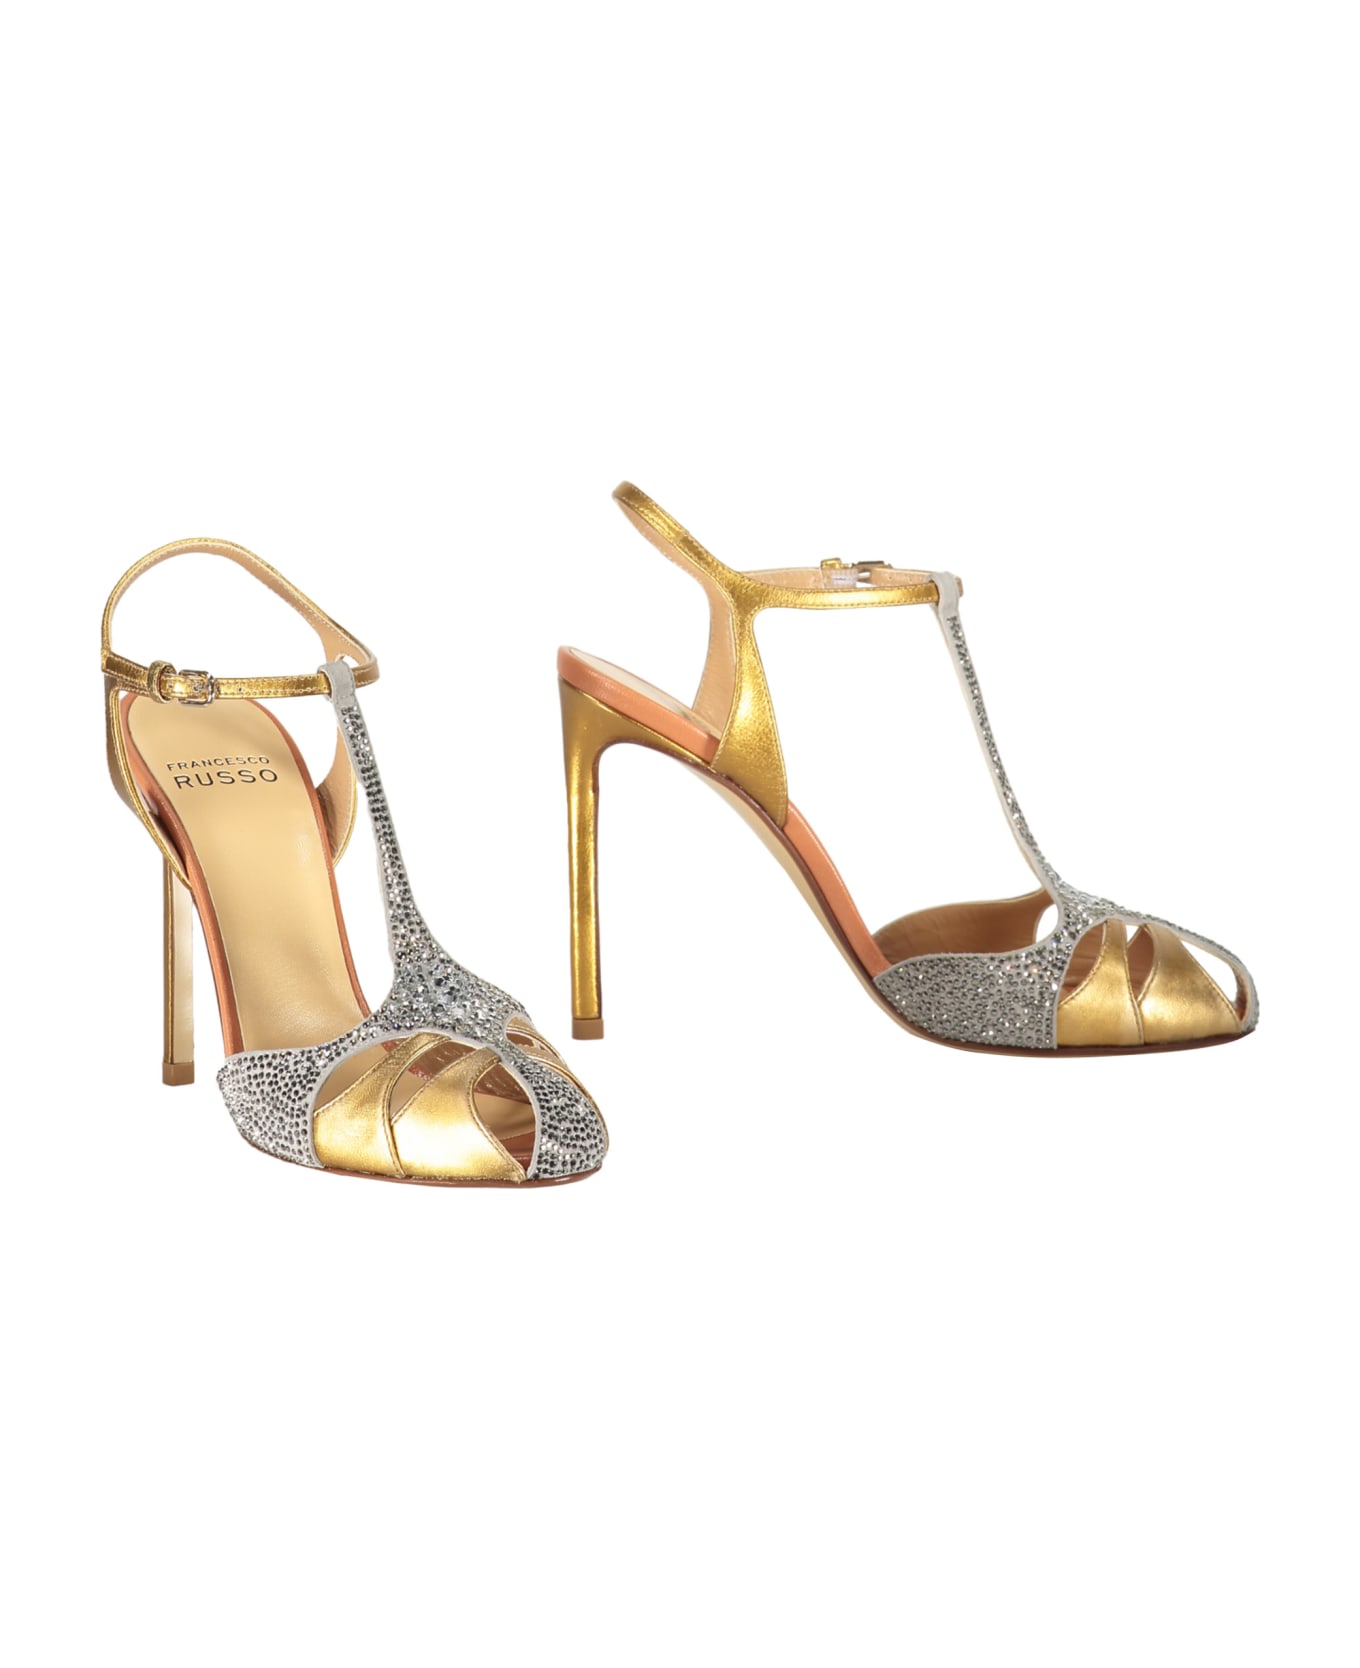 Francesco Russo Heeled Sandals - Gold